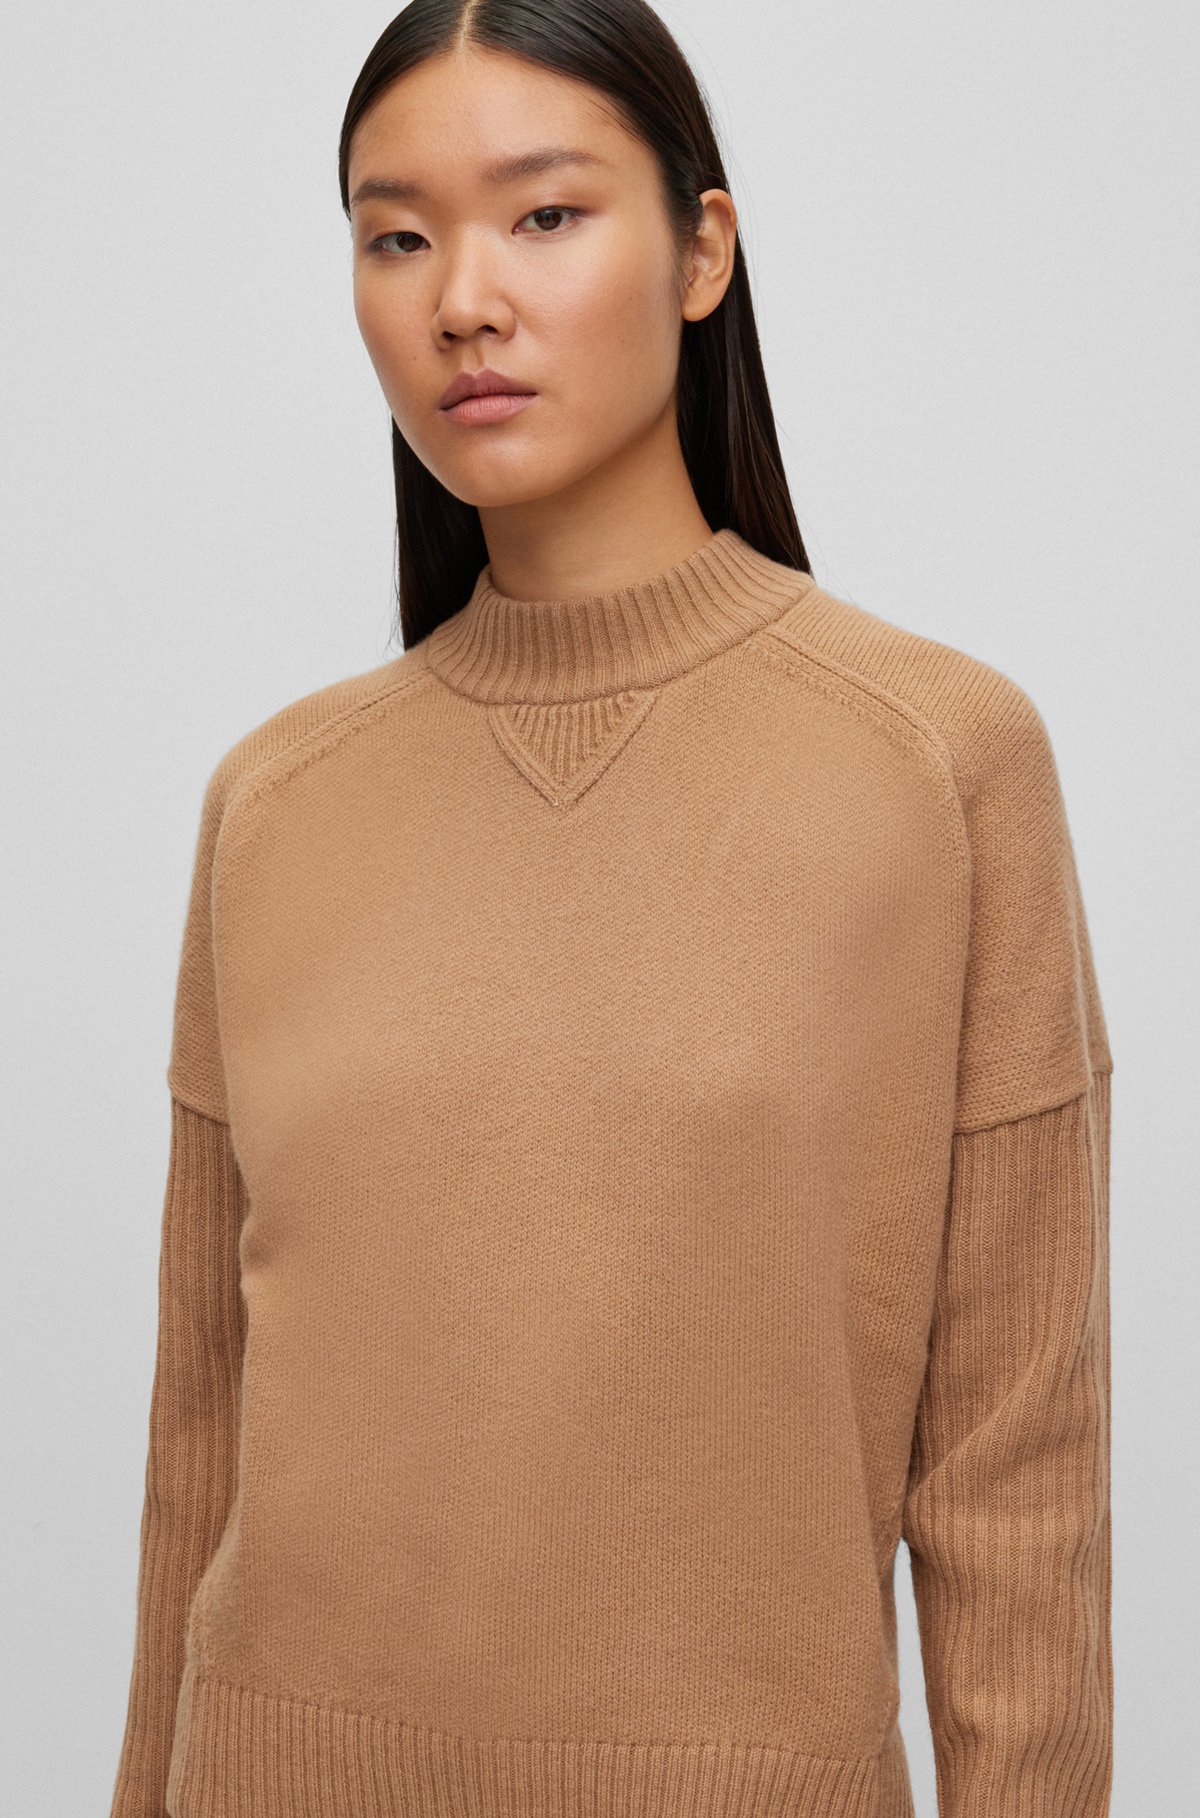 BOSS - Virgin-wool sweater